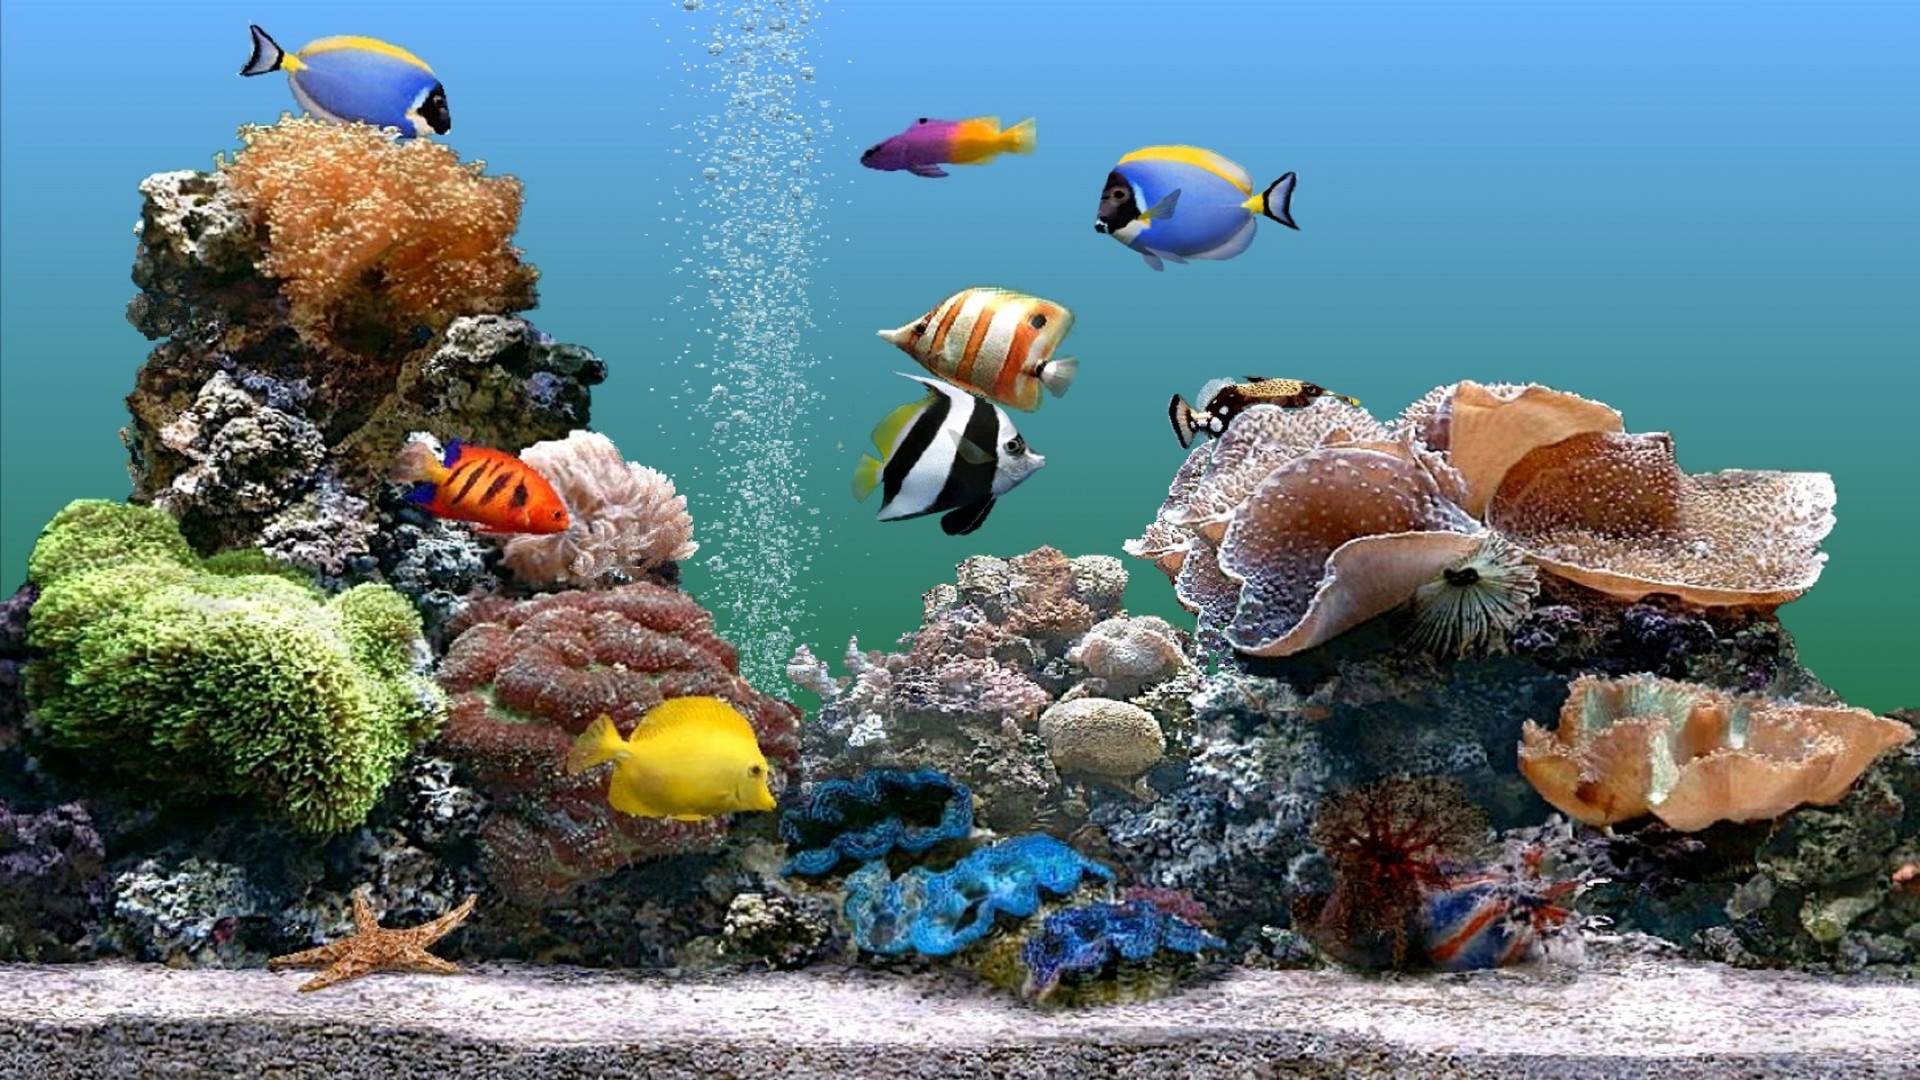 стая рыбок подводный рыбы коралловый море океан воды риф тропический морской природа аквариум водный дайвинг плавание глубокий подводная лодка скуба животное дикой природы